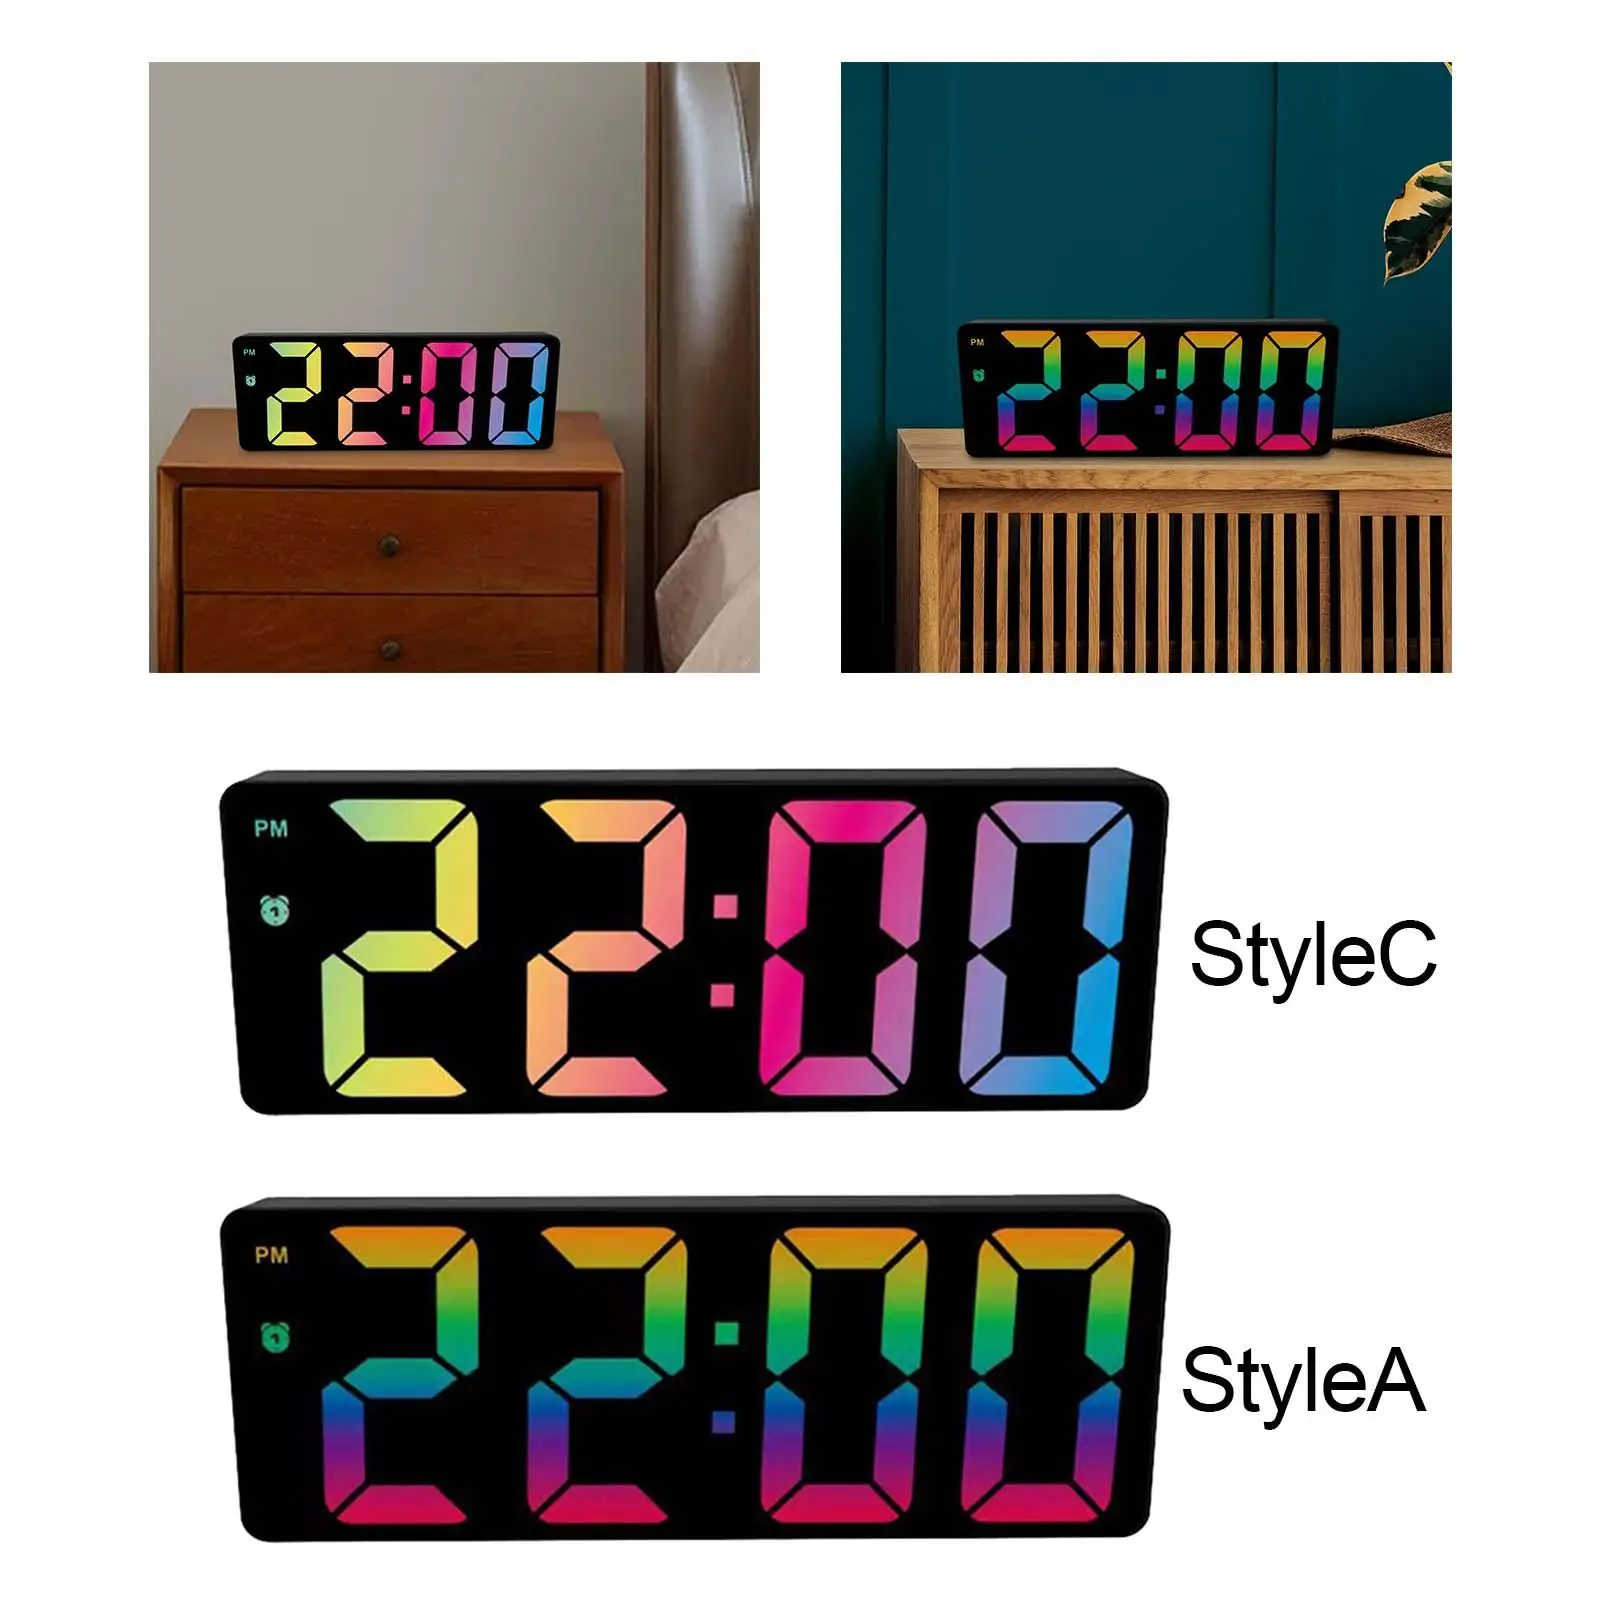 Digital Colorful Alarm Clock Large LED Display Snooze Dimmer battery Calendar for Desktop Gift Bedroom Home Office